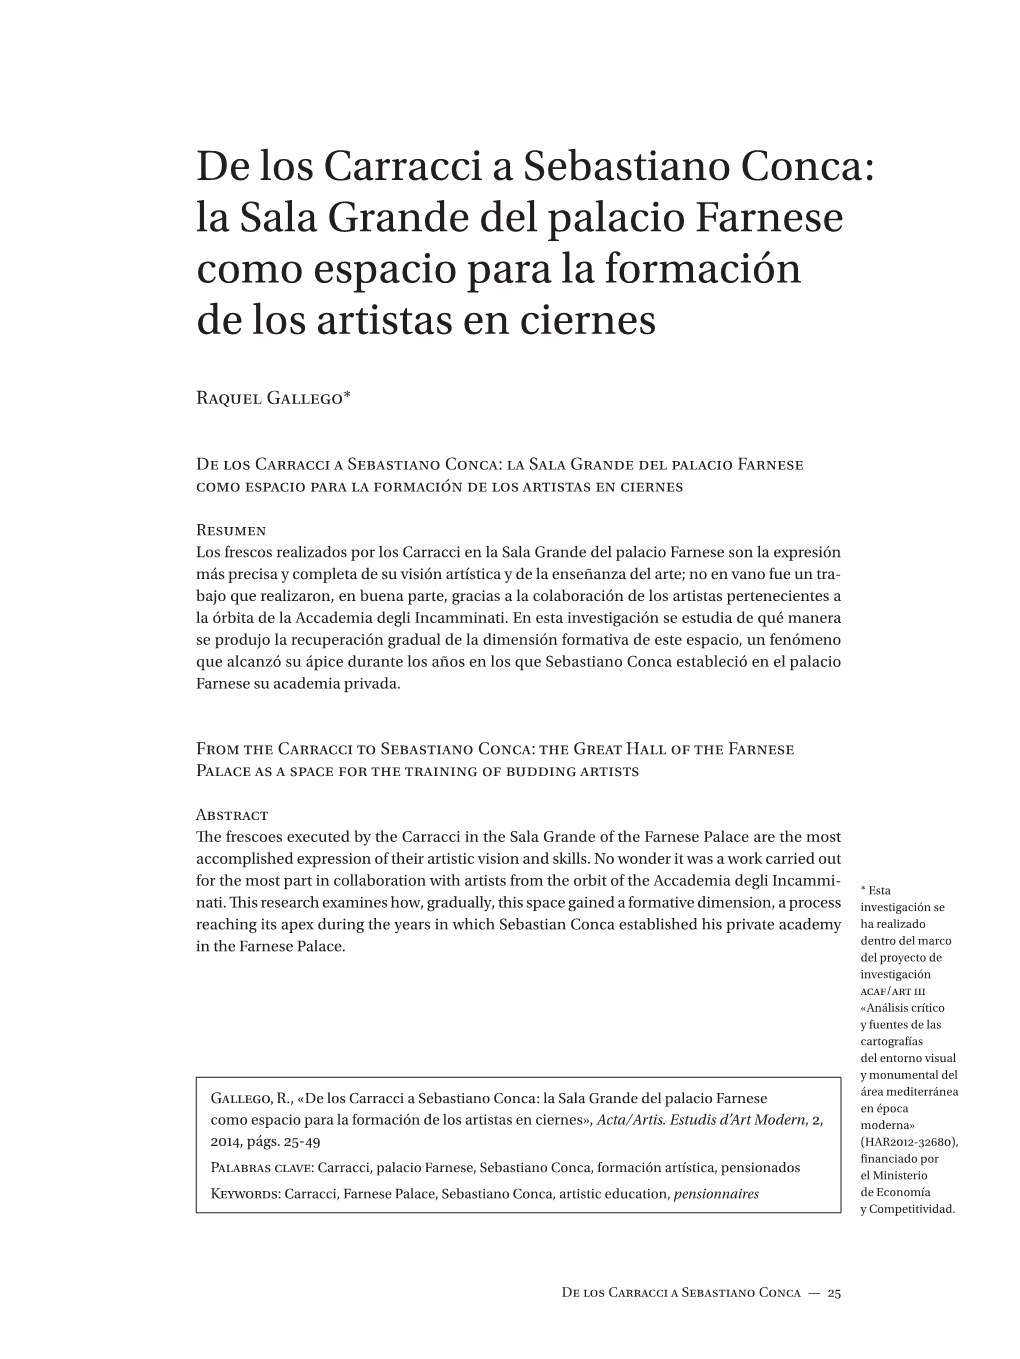 De Los Carracci a Sebastiano Conca: La Sala Grande Del Palacio Farnese Como Espacio Para La Formación De Los Artistas En Ciernes